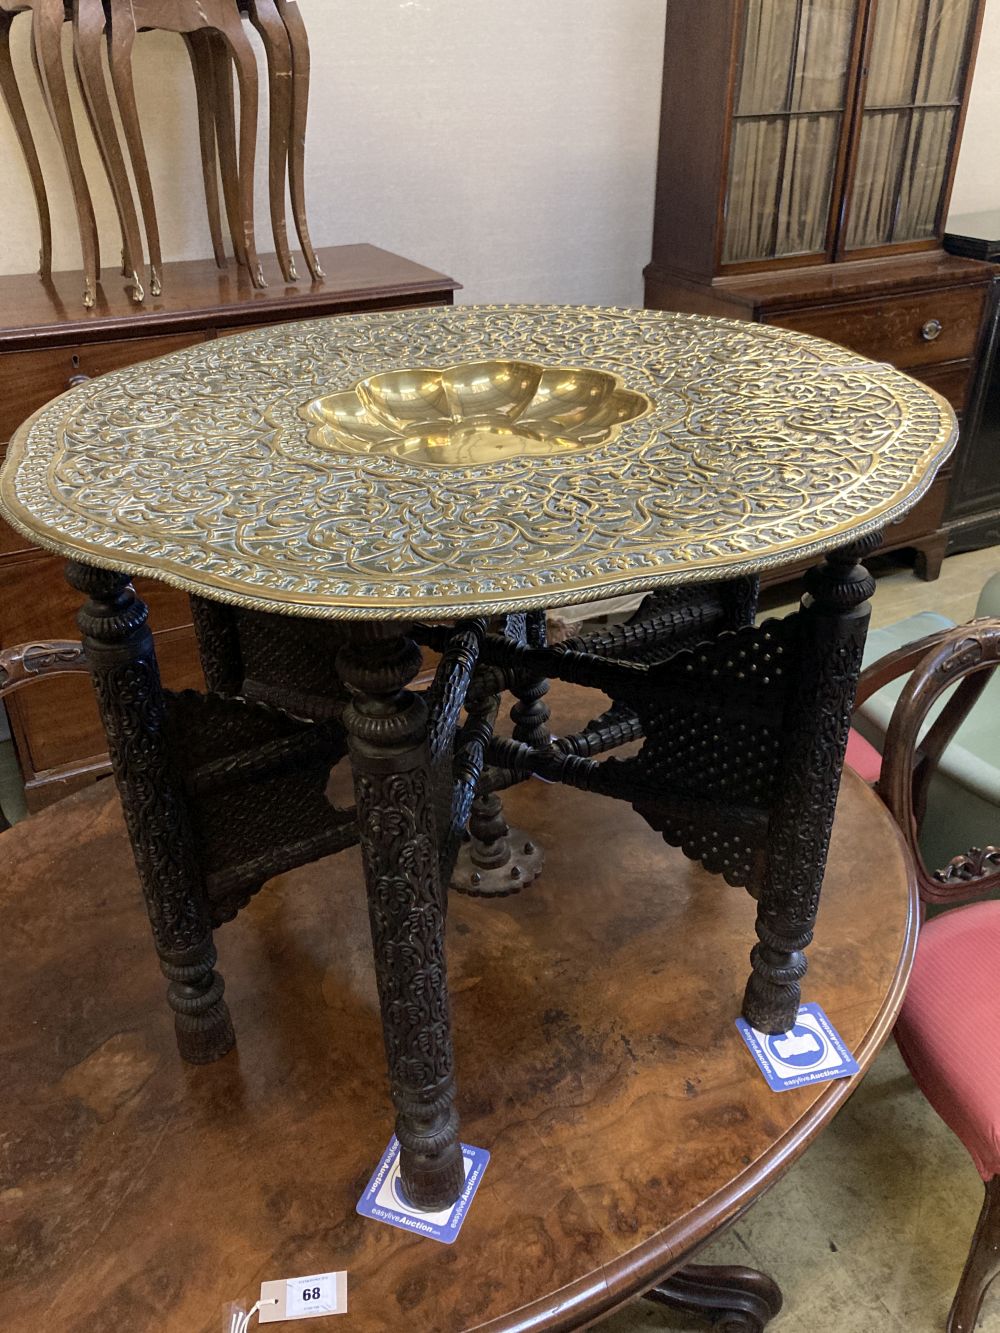 A Benares brass tray top table, 78cm diameter, 62cm high